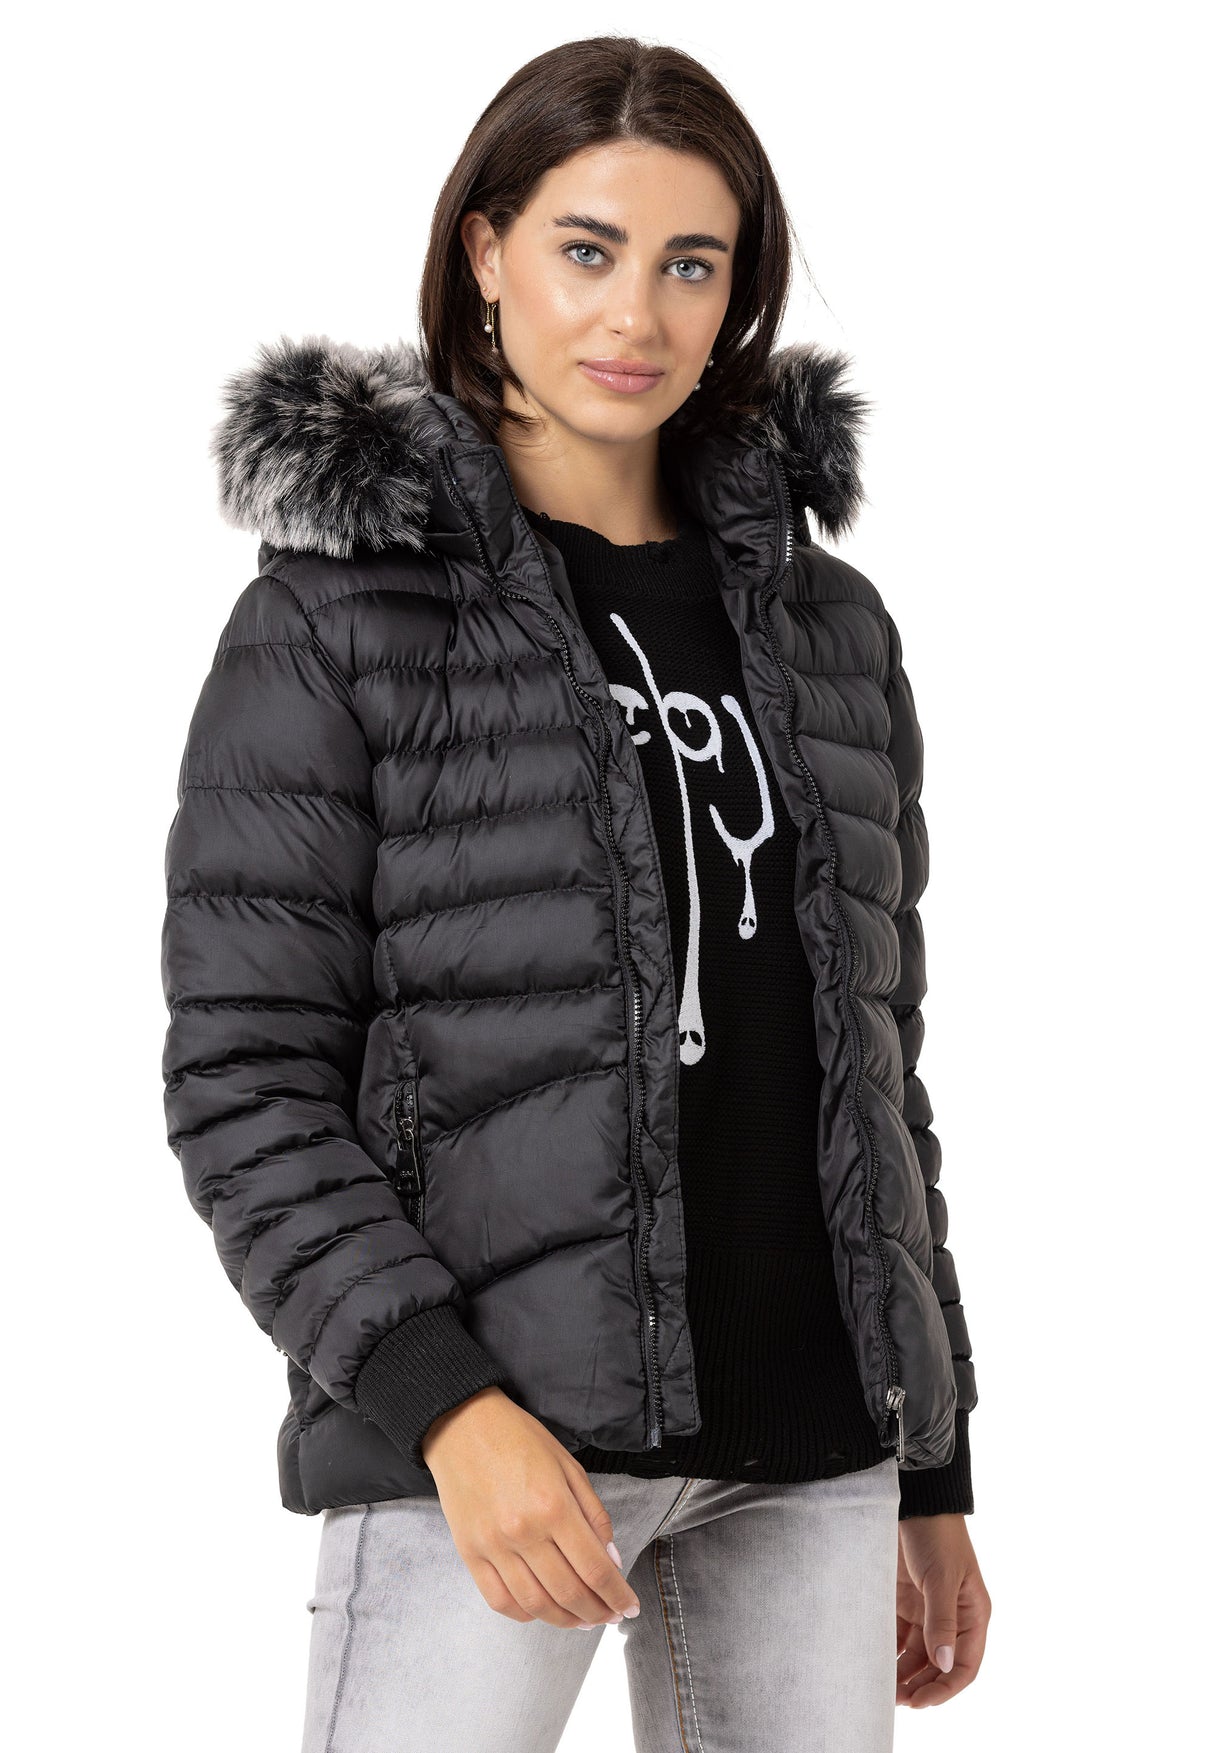 Giacca invernale femminile WM132 con cappuccio